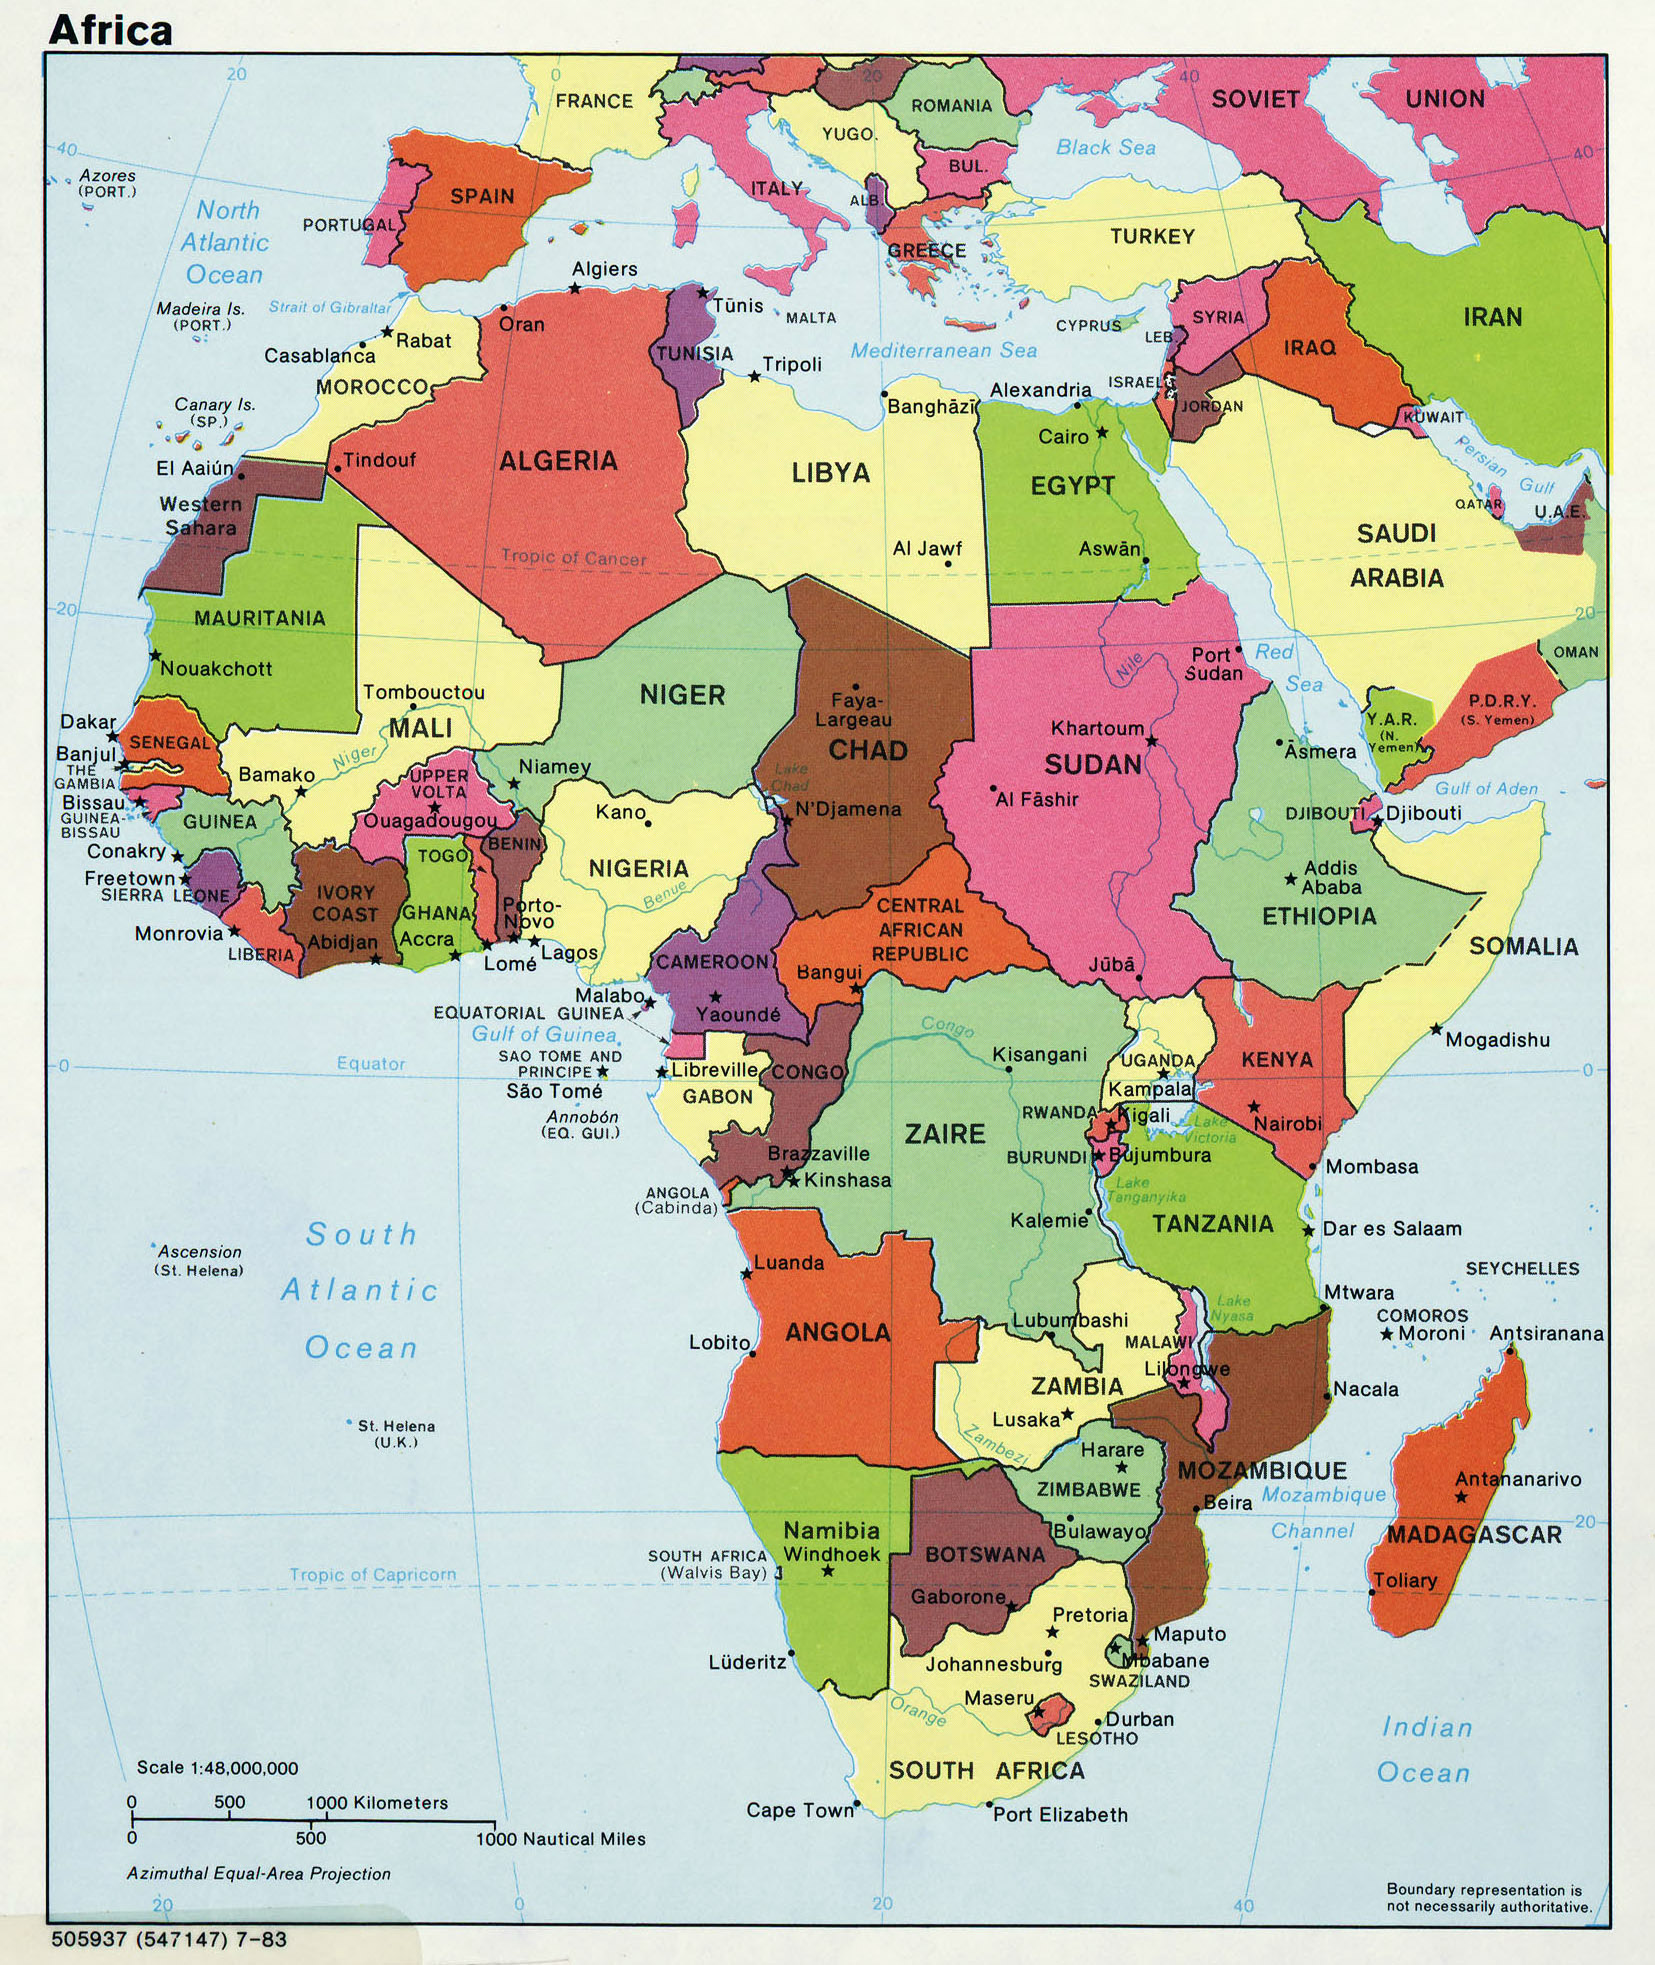 Mapa Politico De Africa Mapa De Paises Y Ciudades De Africa National Images 1020